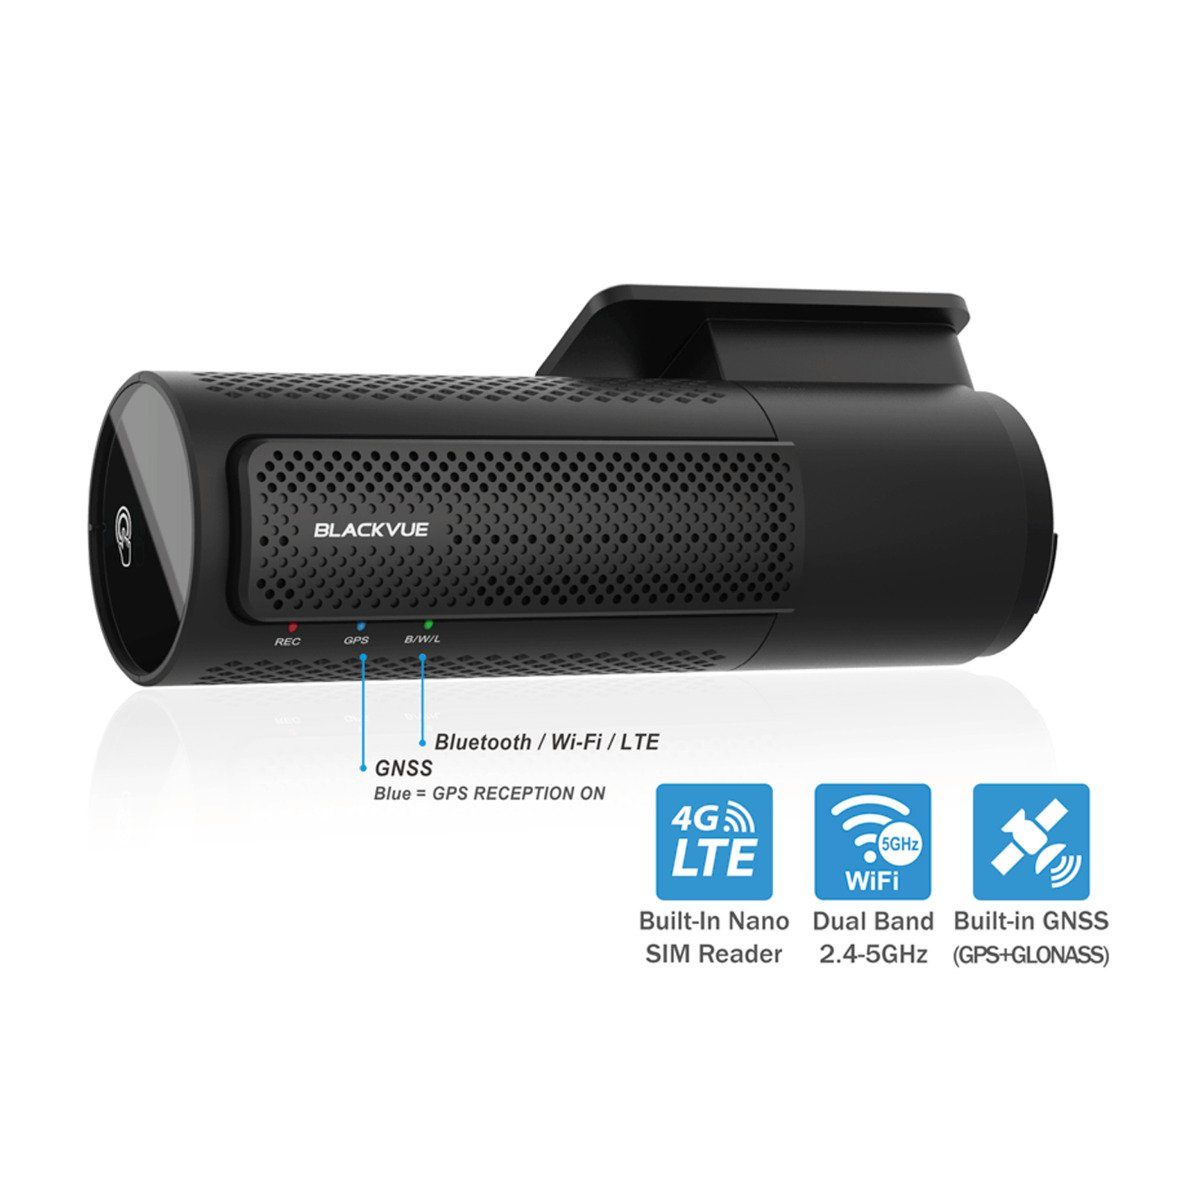 Dashcam Dashcam DR770X-2CH BlackVue + Heckkamera BlackVue LTE 256GB